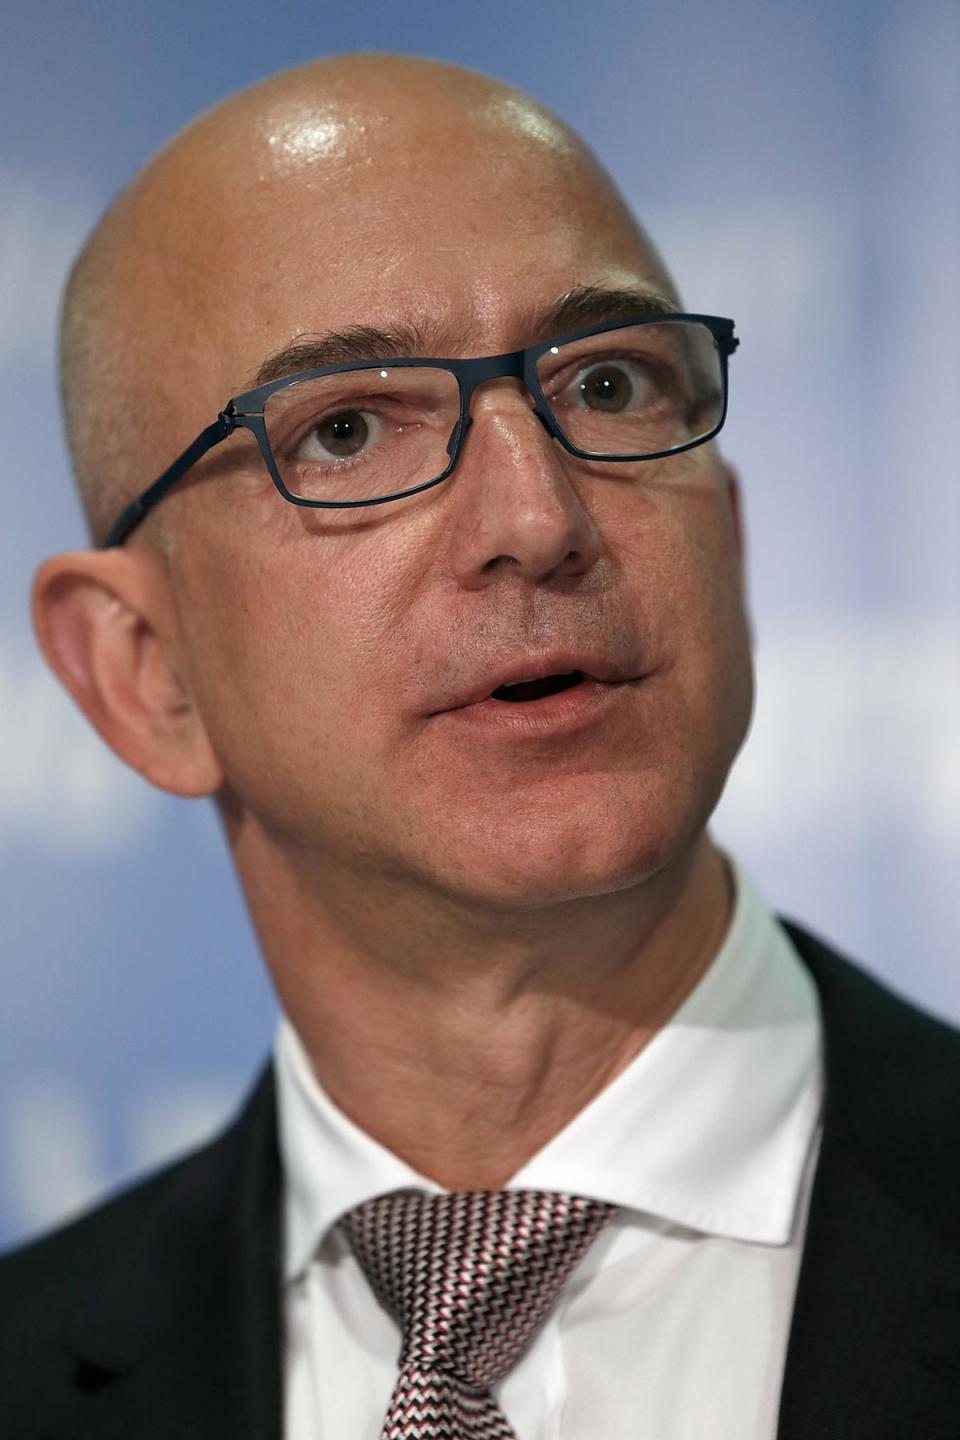 Die Amazon-Aktie erlitt mit gut sieben Prozent einen echten Kursrutsch. Wie viele superreiche Unternehmer besteht bei Bezos ein Großteil des Vermögens aus Aktien. Bezos wird den Verlust aber verkraften können, denn er hat im Jahr 2015 an der Börse allein 30 Milliarden Dollar plus gemacht.